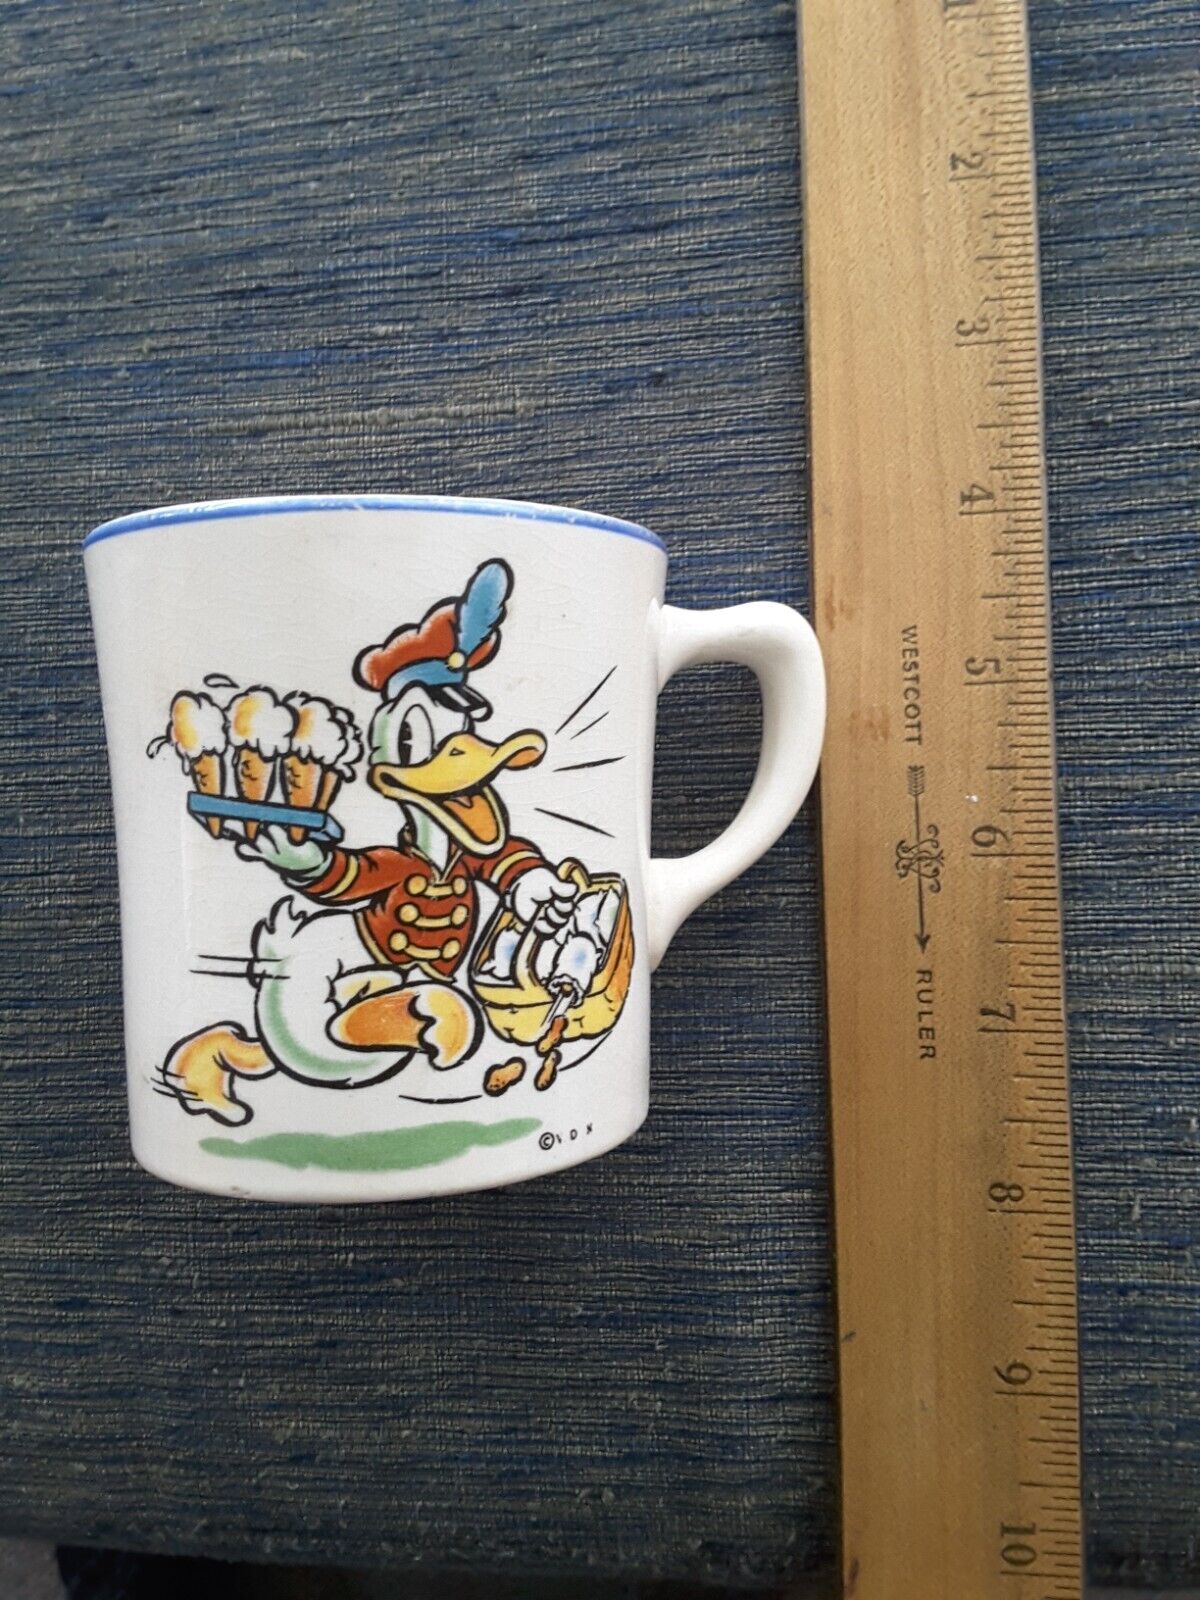 Donald Duck Ceramic Cup Vintage Walt Disney Enterprises Mfd. By Permission  RARE